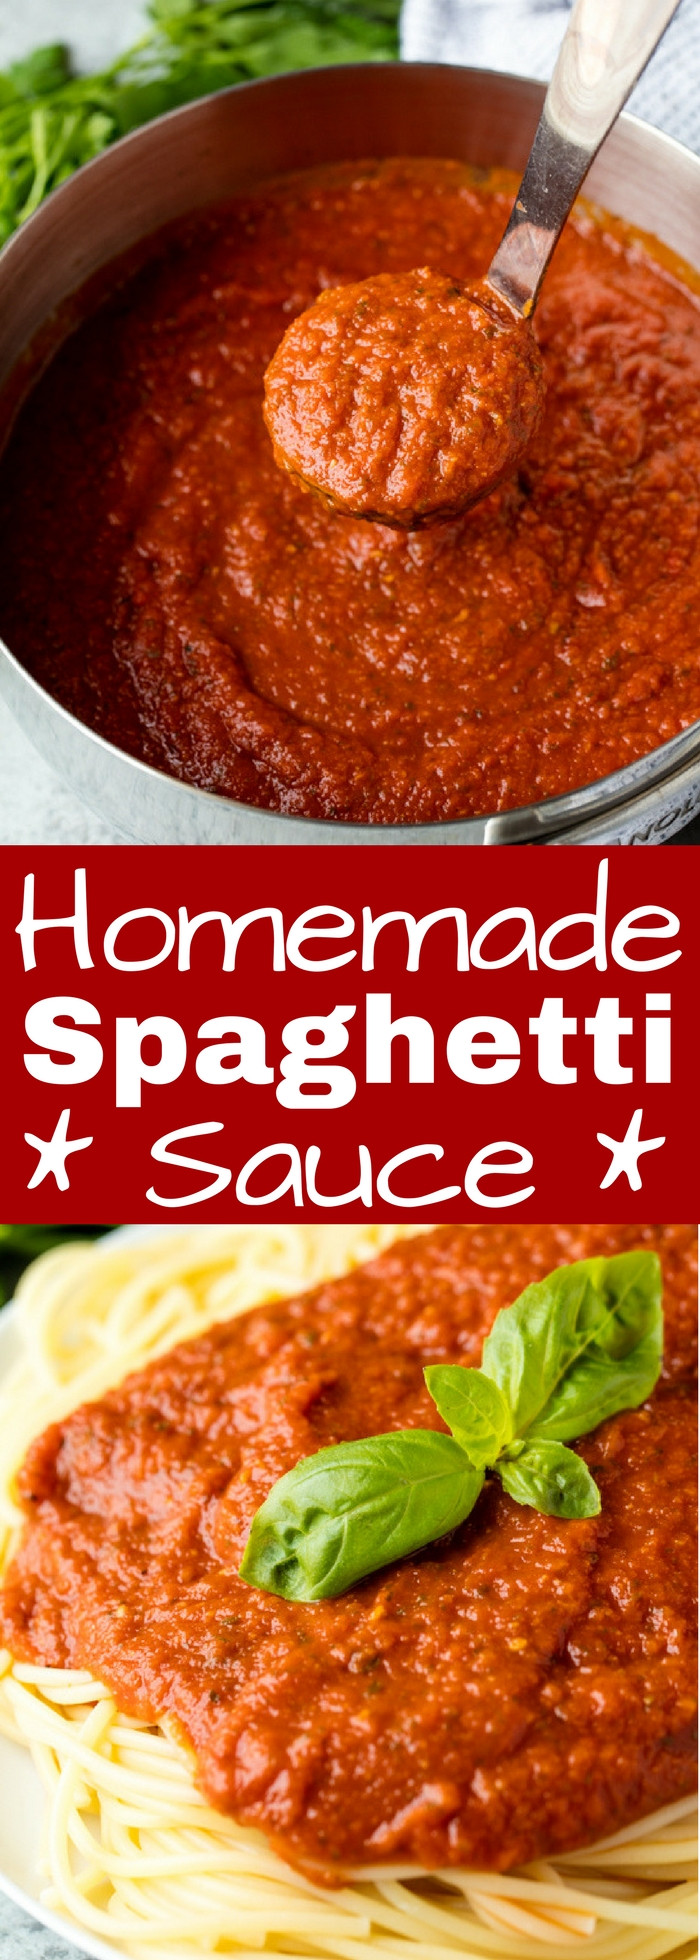 Easy Spaghetti Sauce Recipe
 what spices go in spaghetti sauce